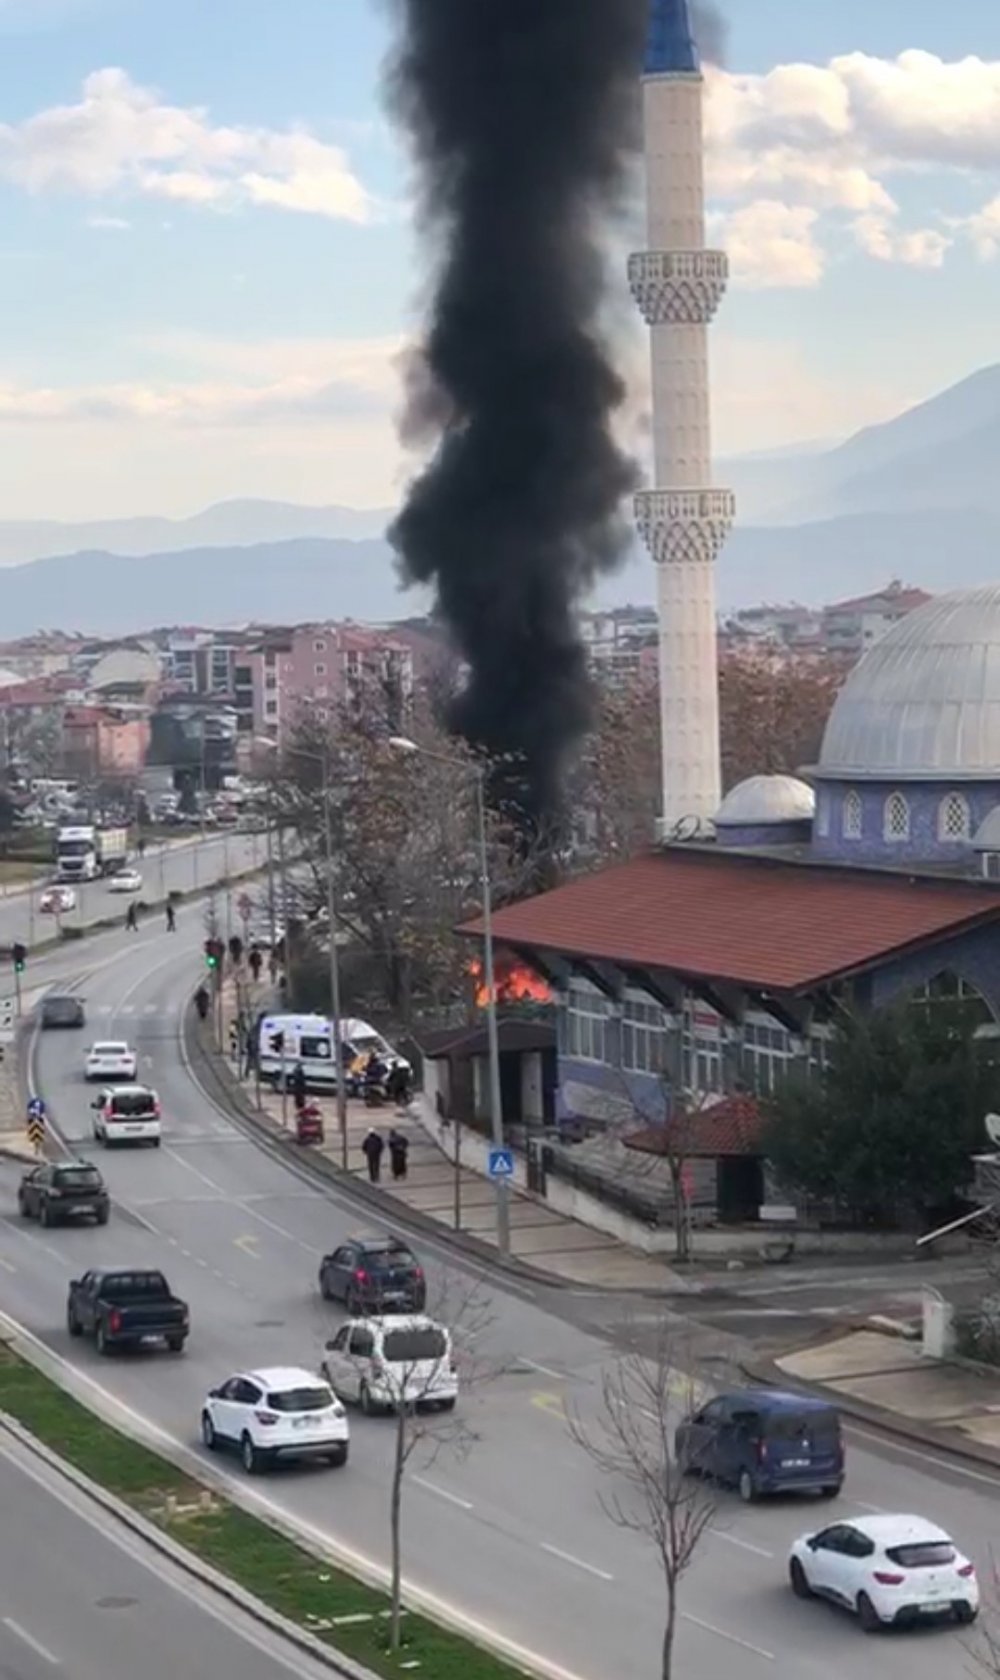 Denizli'de çiçekçi dükkanında çıkan yangın hızla söndürülürken, yükselen dumanlar kentin bir çok noktasından gözüktü.